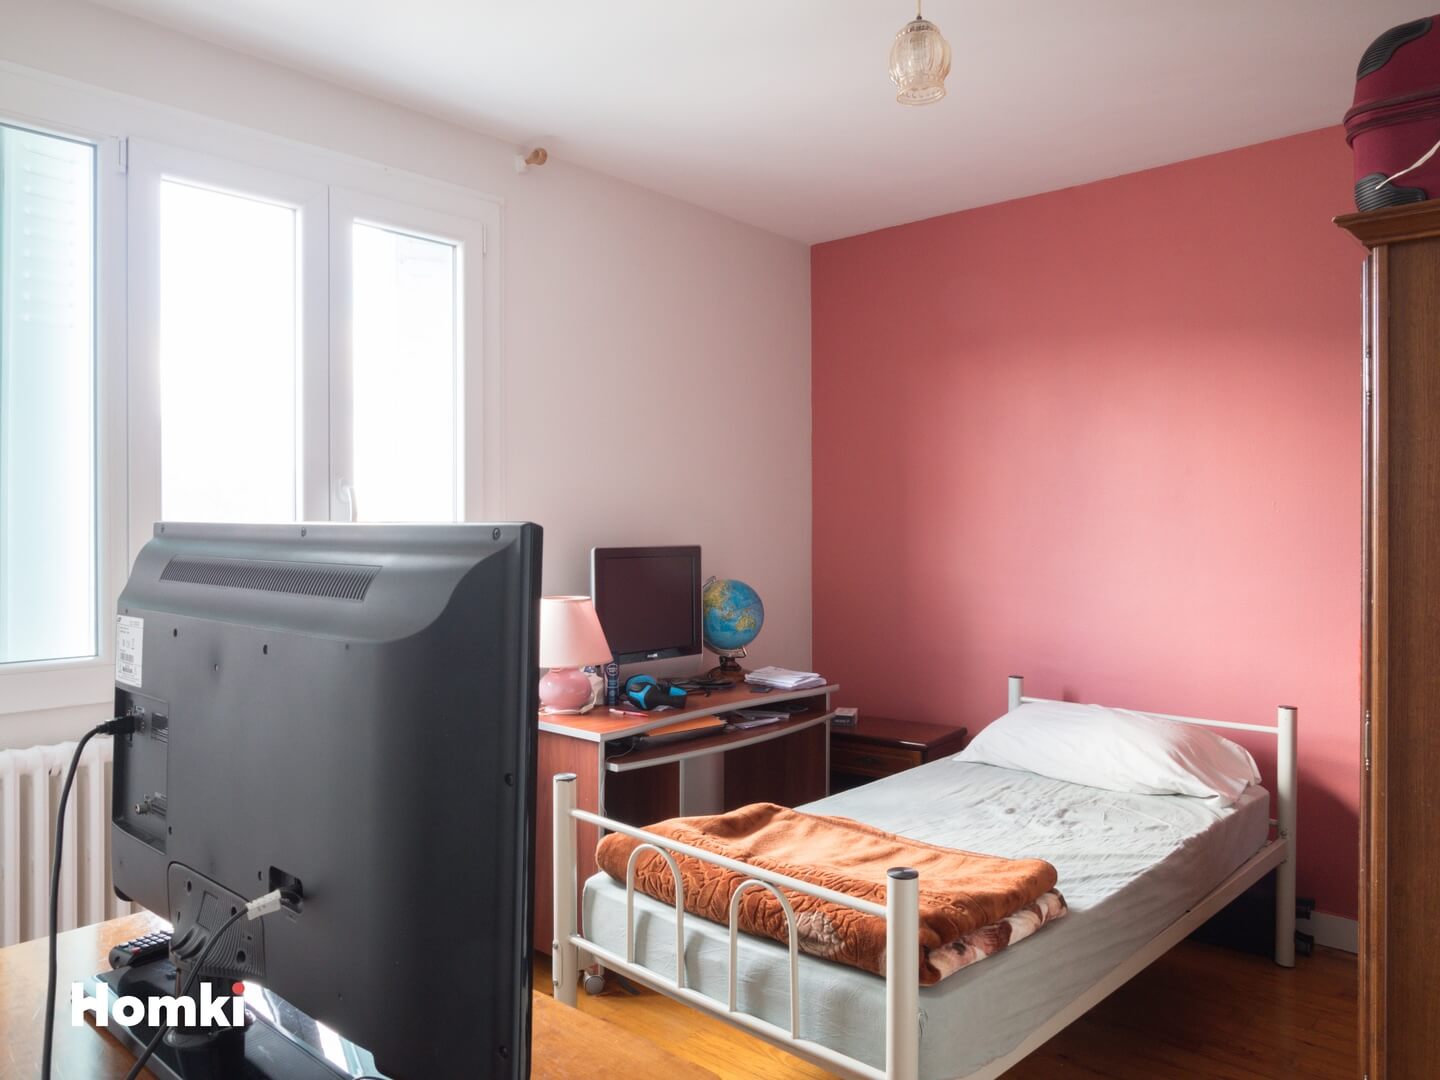 Homki - Vente Appartement  de 70.0 m² à Saint-Étienne 42000